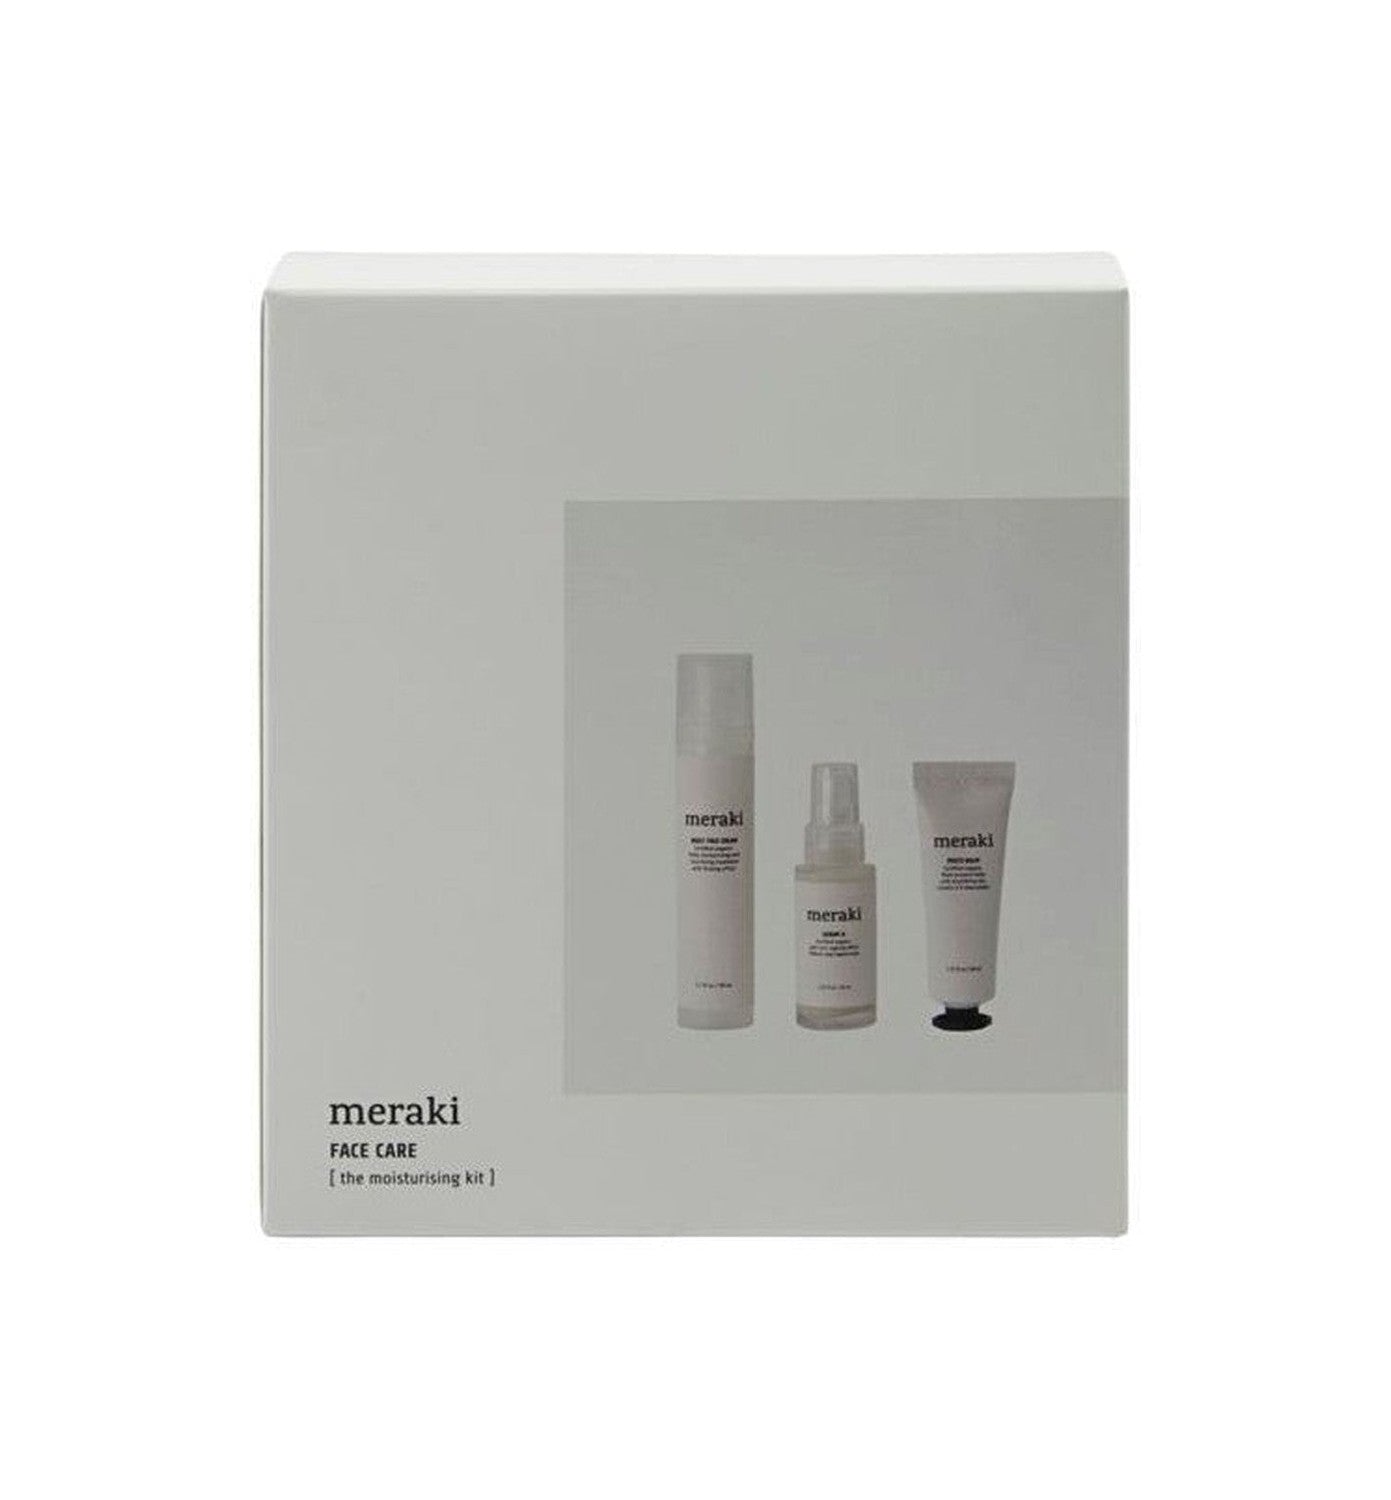 Caixa de presente de Meraki, o kit hidratante - Cuidado com o rosto